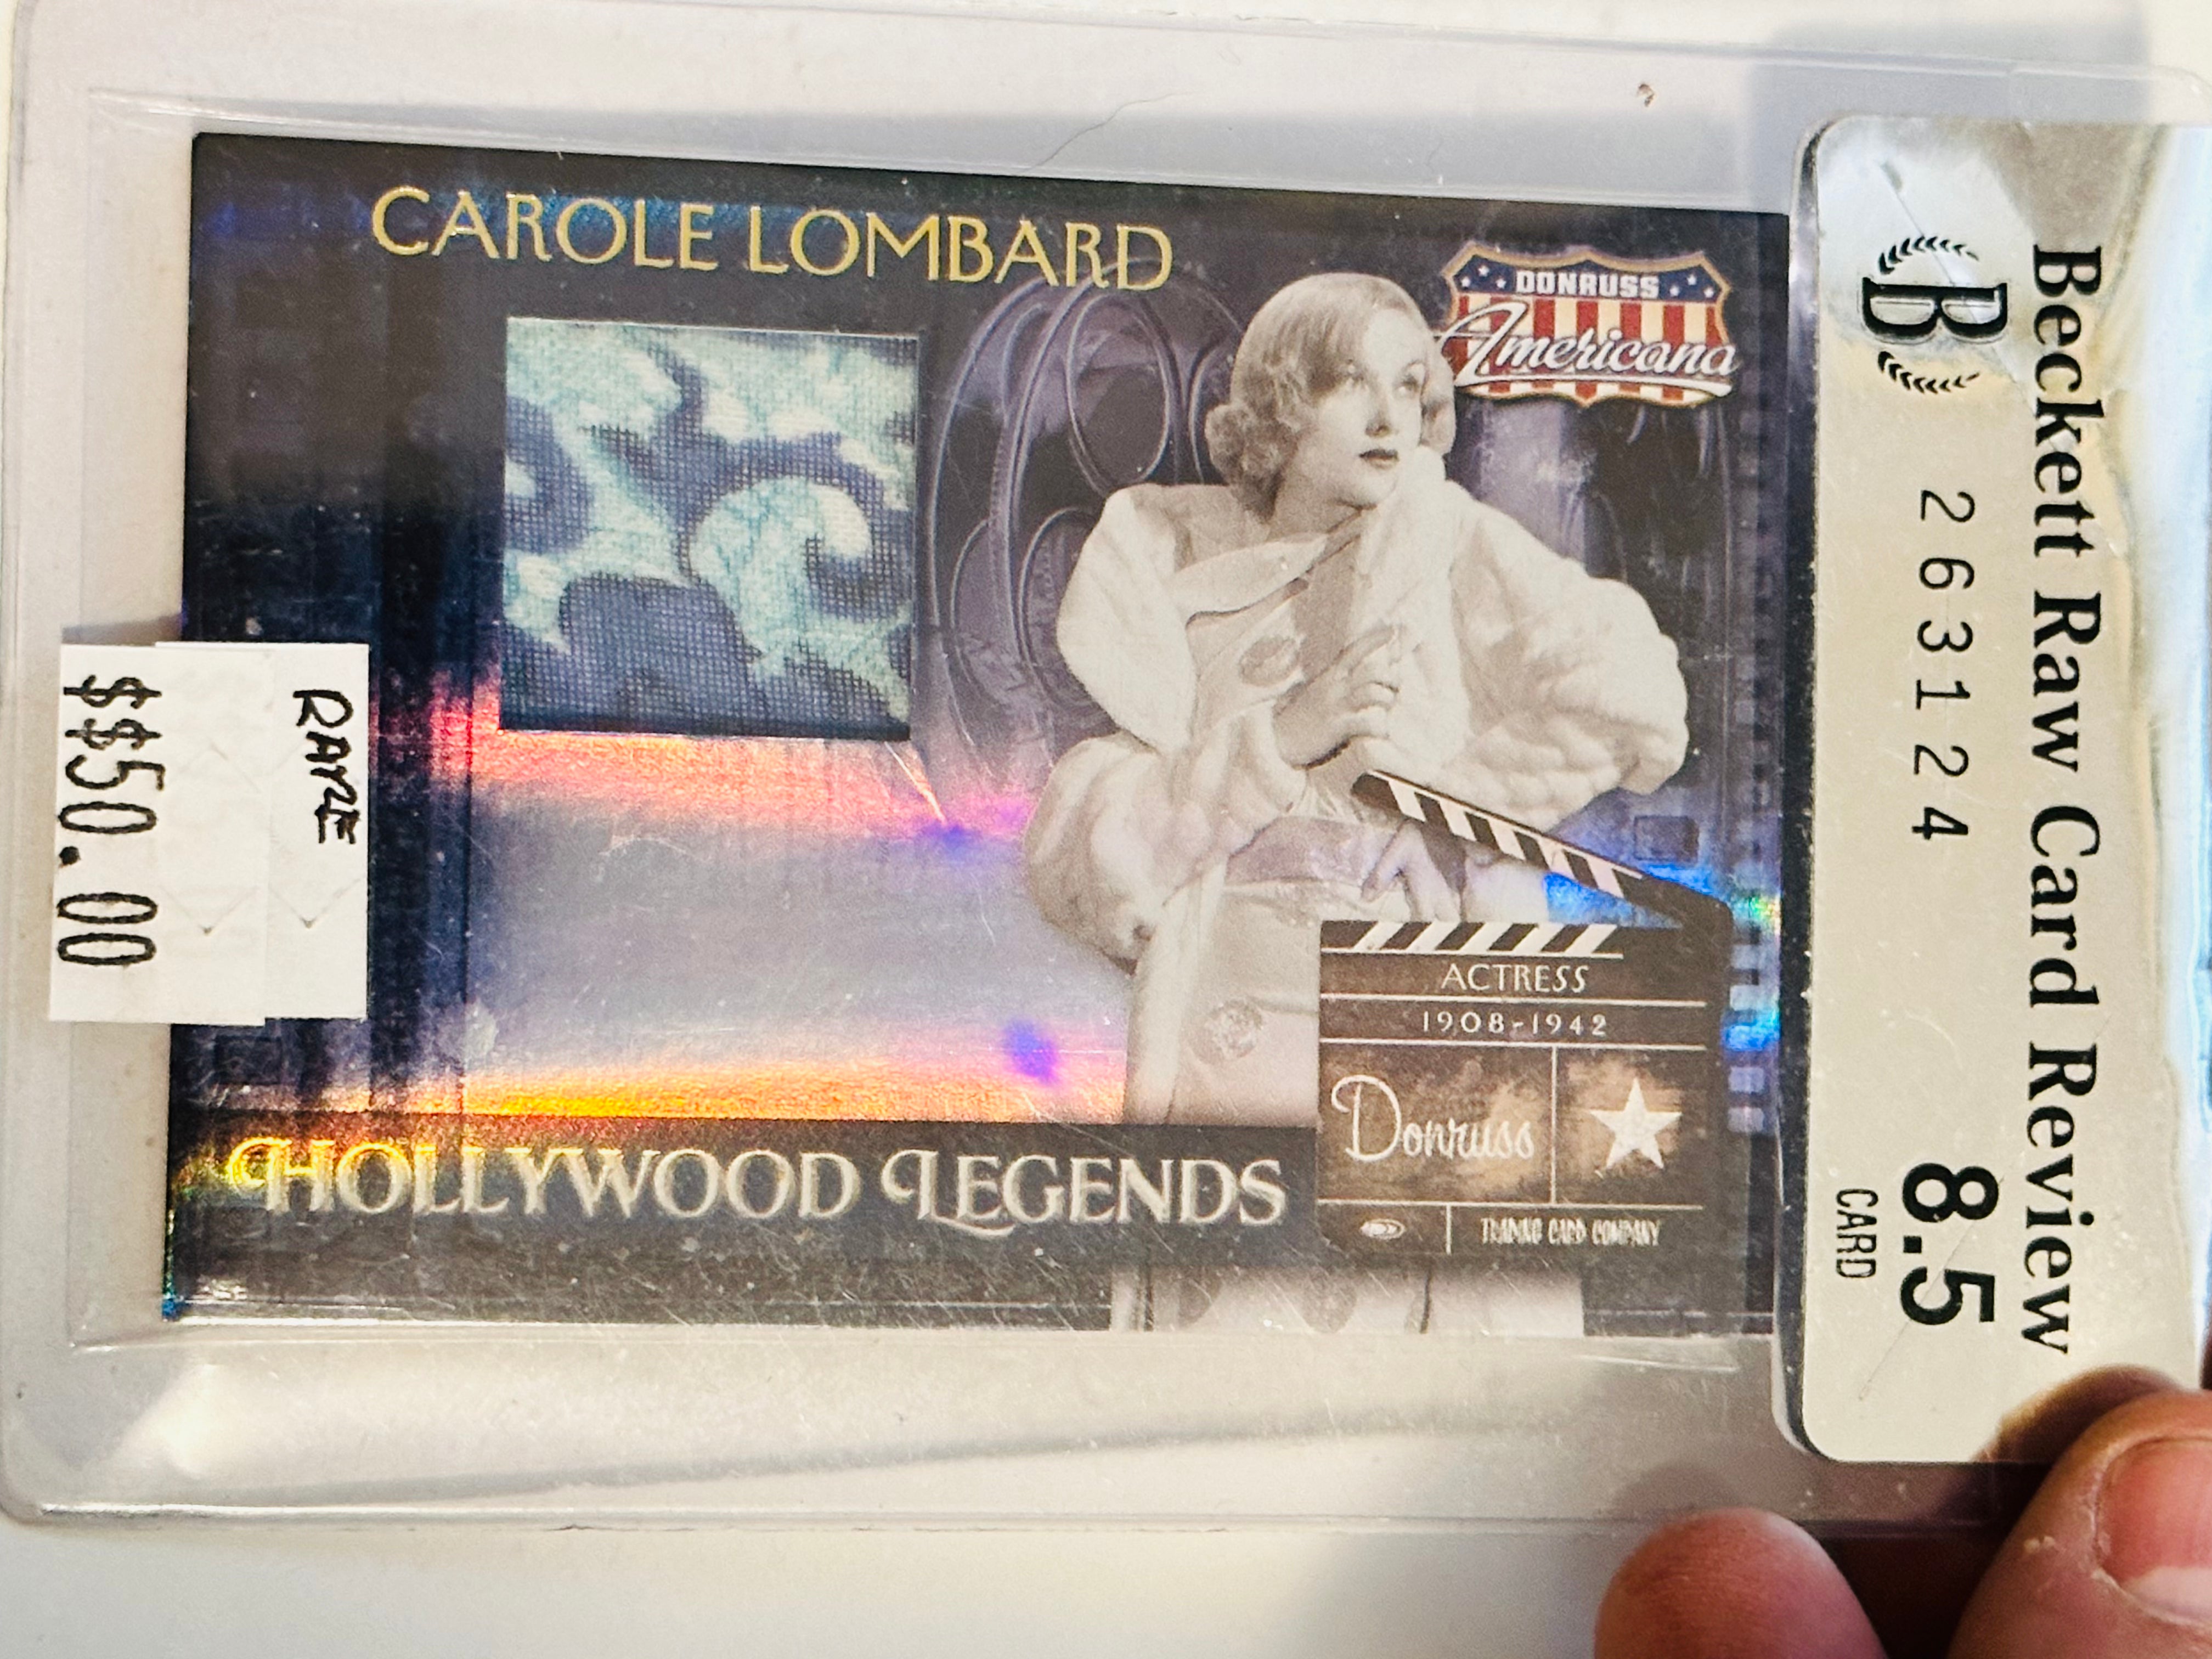 Carole Lombard rare movie memorabilia insert card Beckett graded